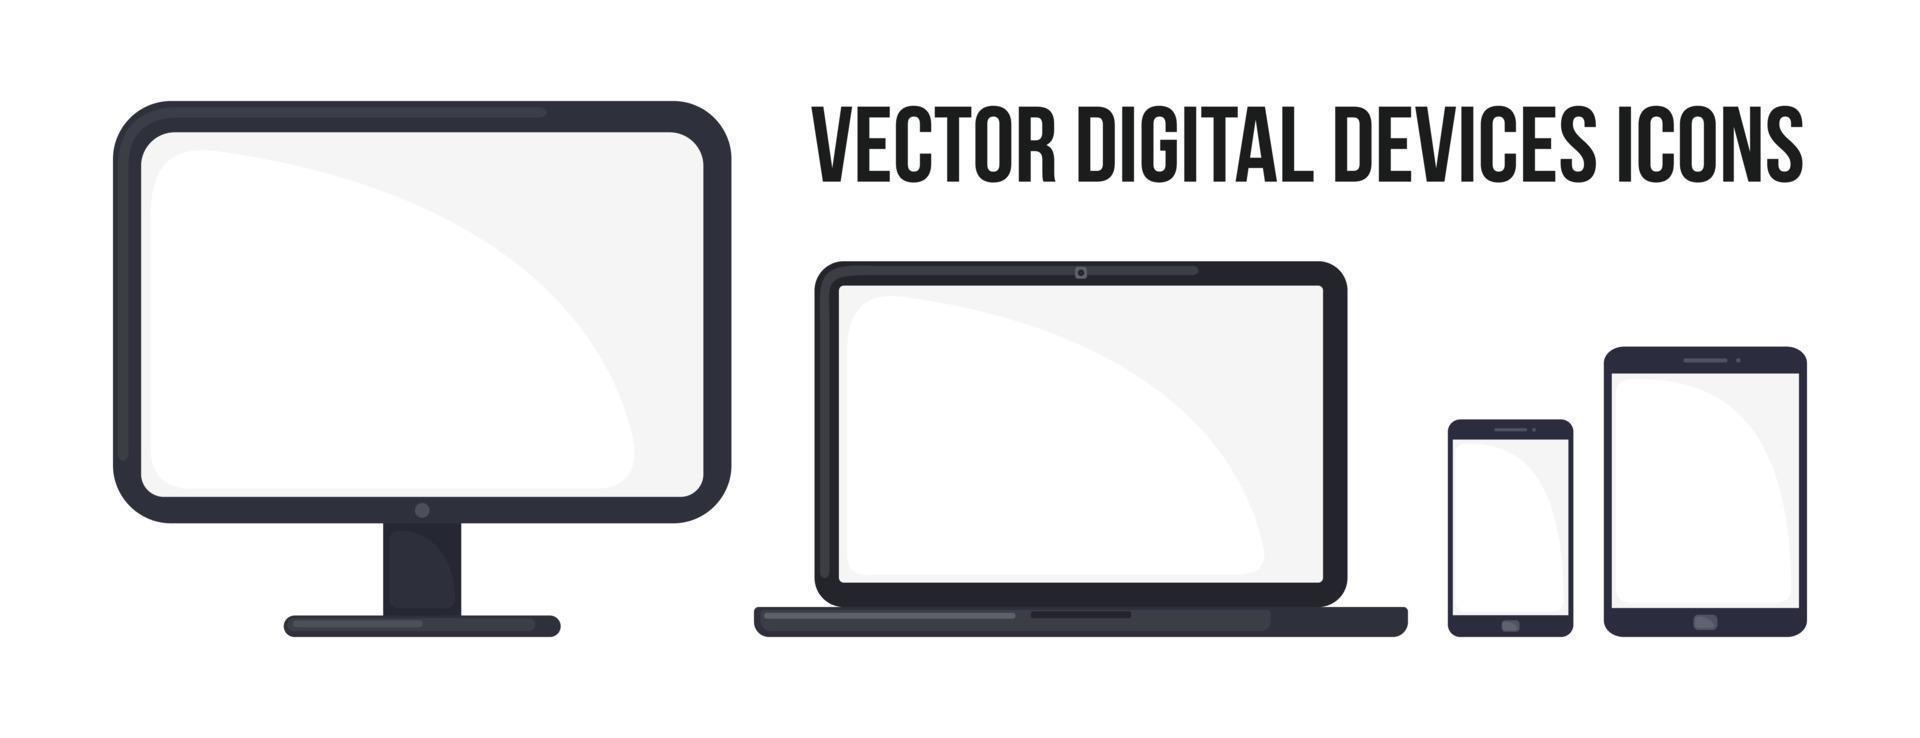 digitale apparaten pictogrammenset in vlakke stijl geïsoleerd op een witte achtergrond. computermonitor, laptop, mobiele telefoon en tablet. vectorillustratie. vector